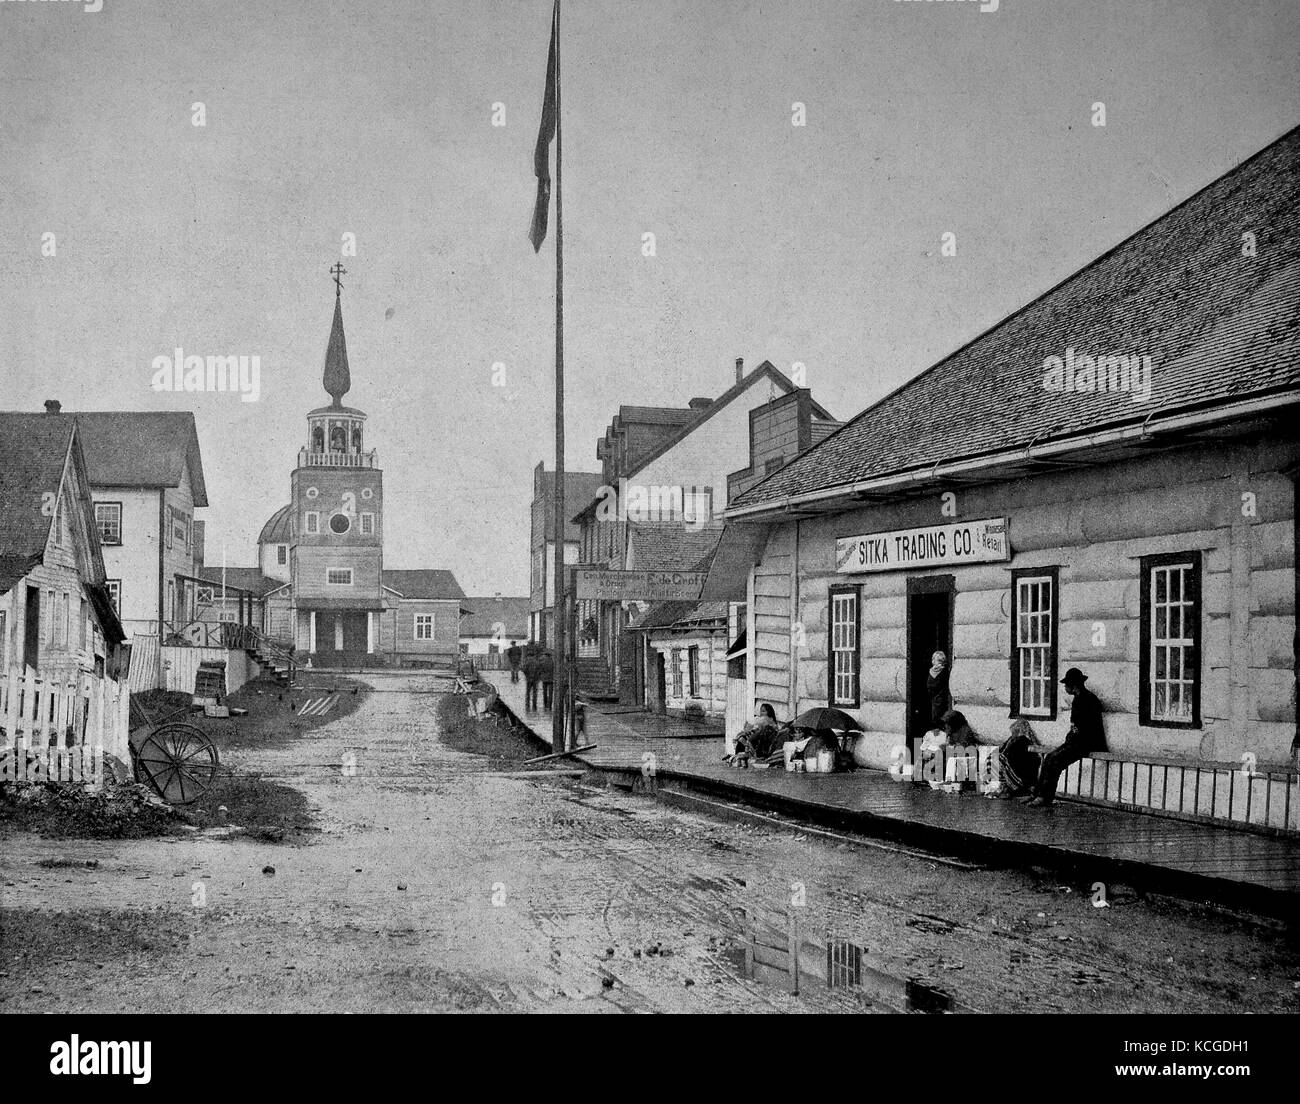 Stati Uniti d'America, scene di strada nel centro della città Sitka in un giorno di pioggia, la gente seduta davanti a un negozio e la chiesa alla fine della strada, Alaska, digitale migliorata la riproduzione di una foto storiche dal (stimato) Anno 1899 Foto Stock